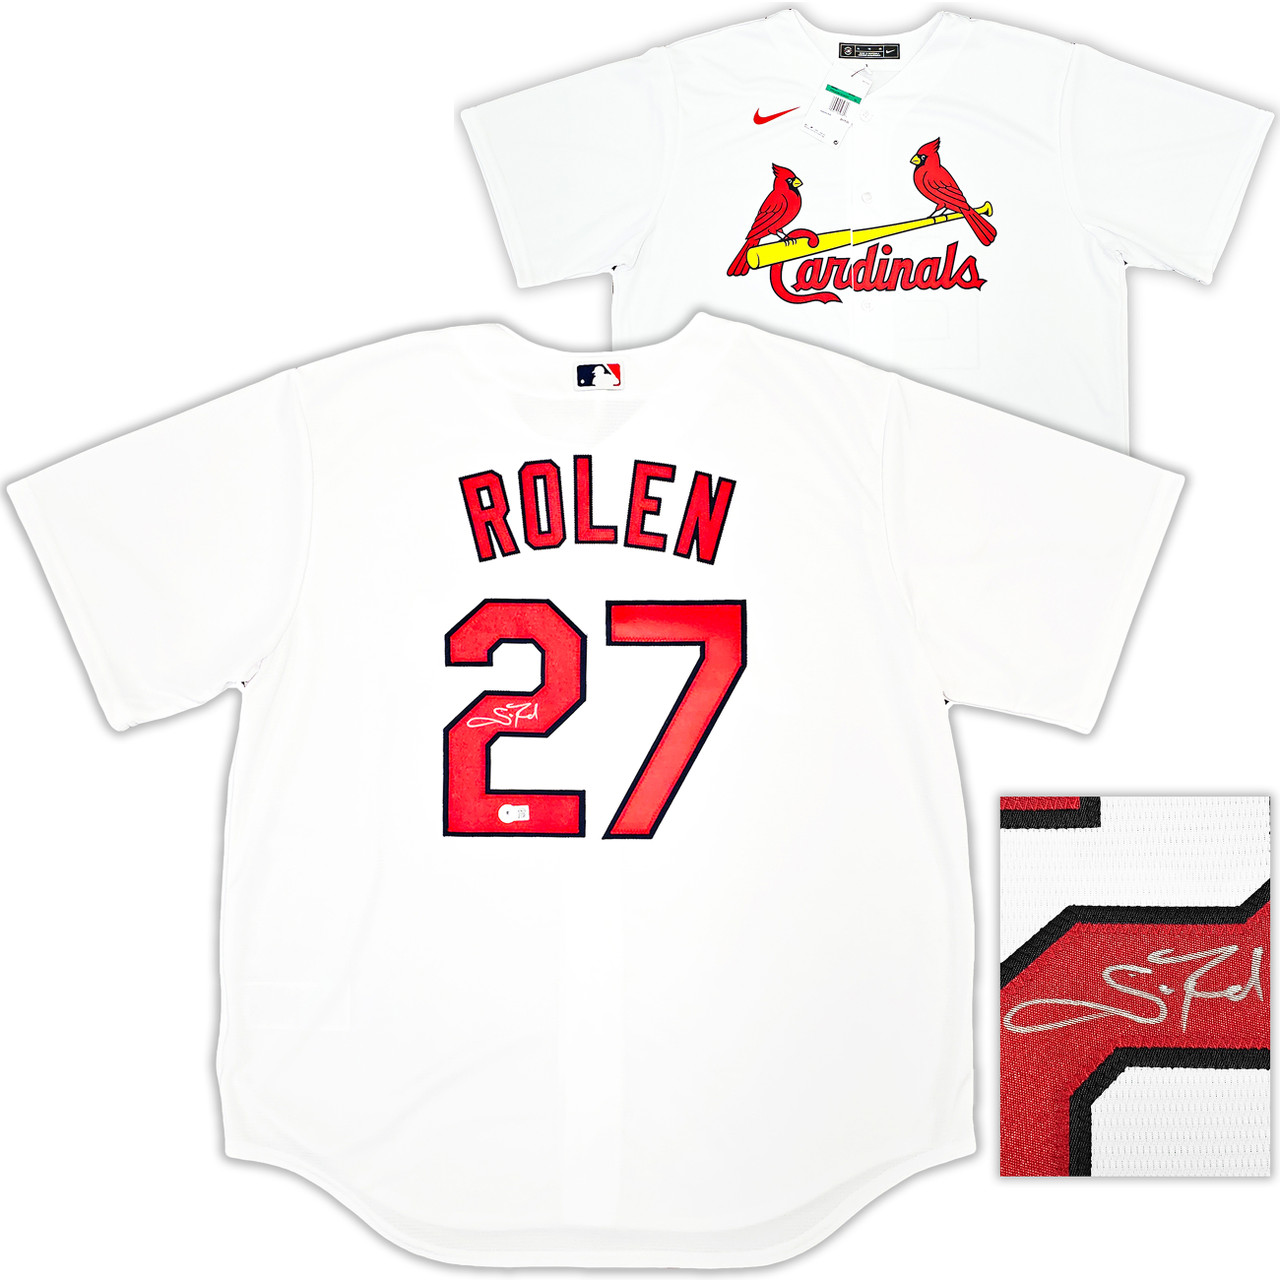 St. Louis Cardinals Scott Rolen Autographed White Nike Jersey Size